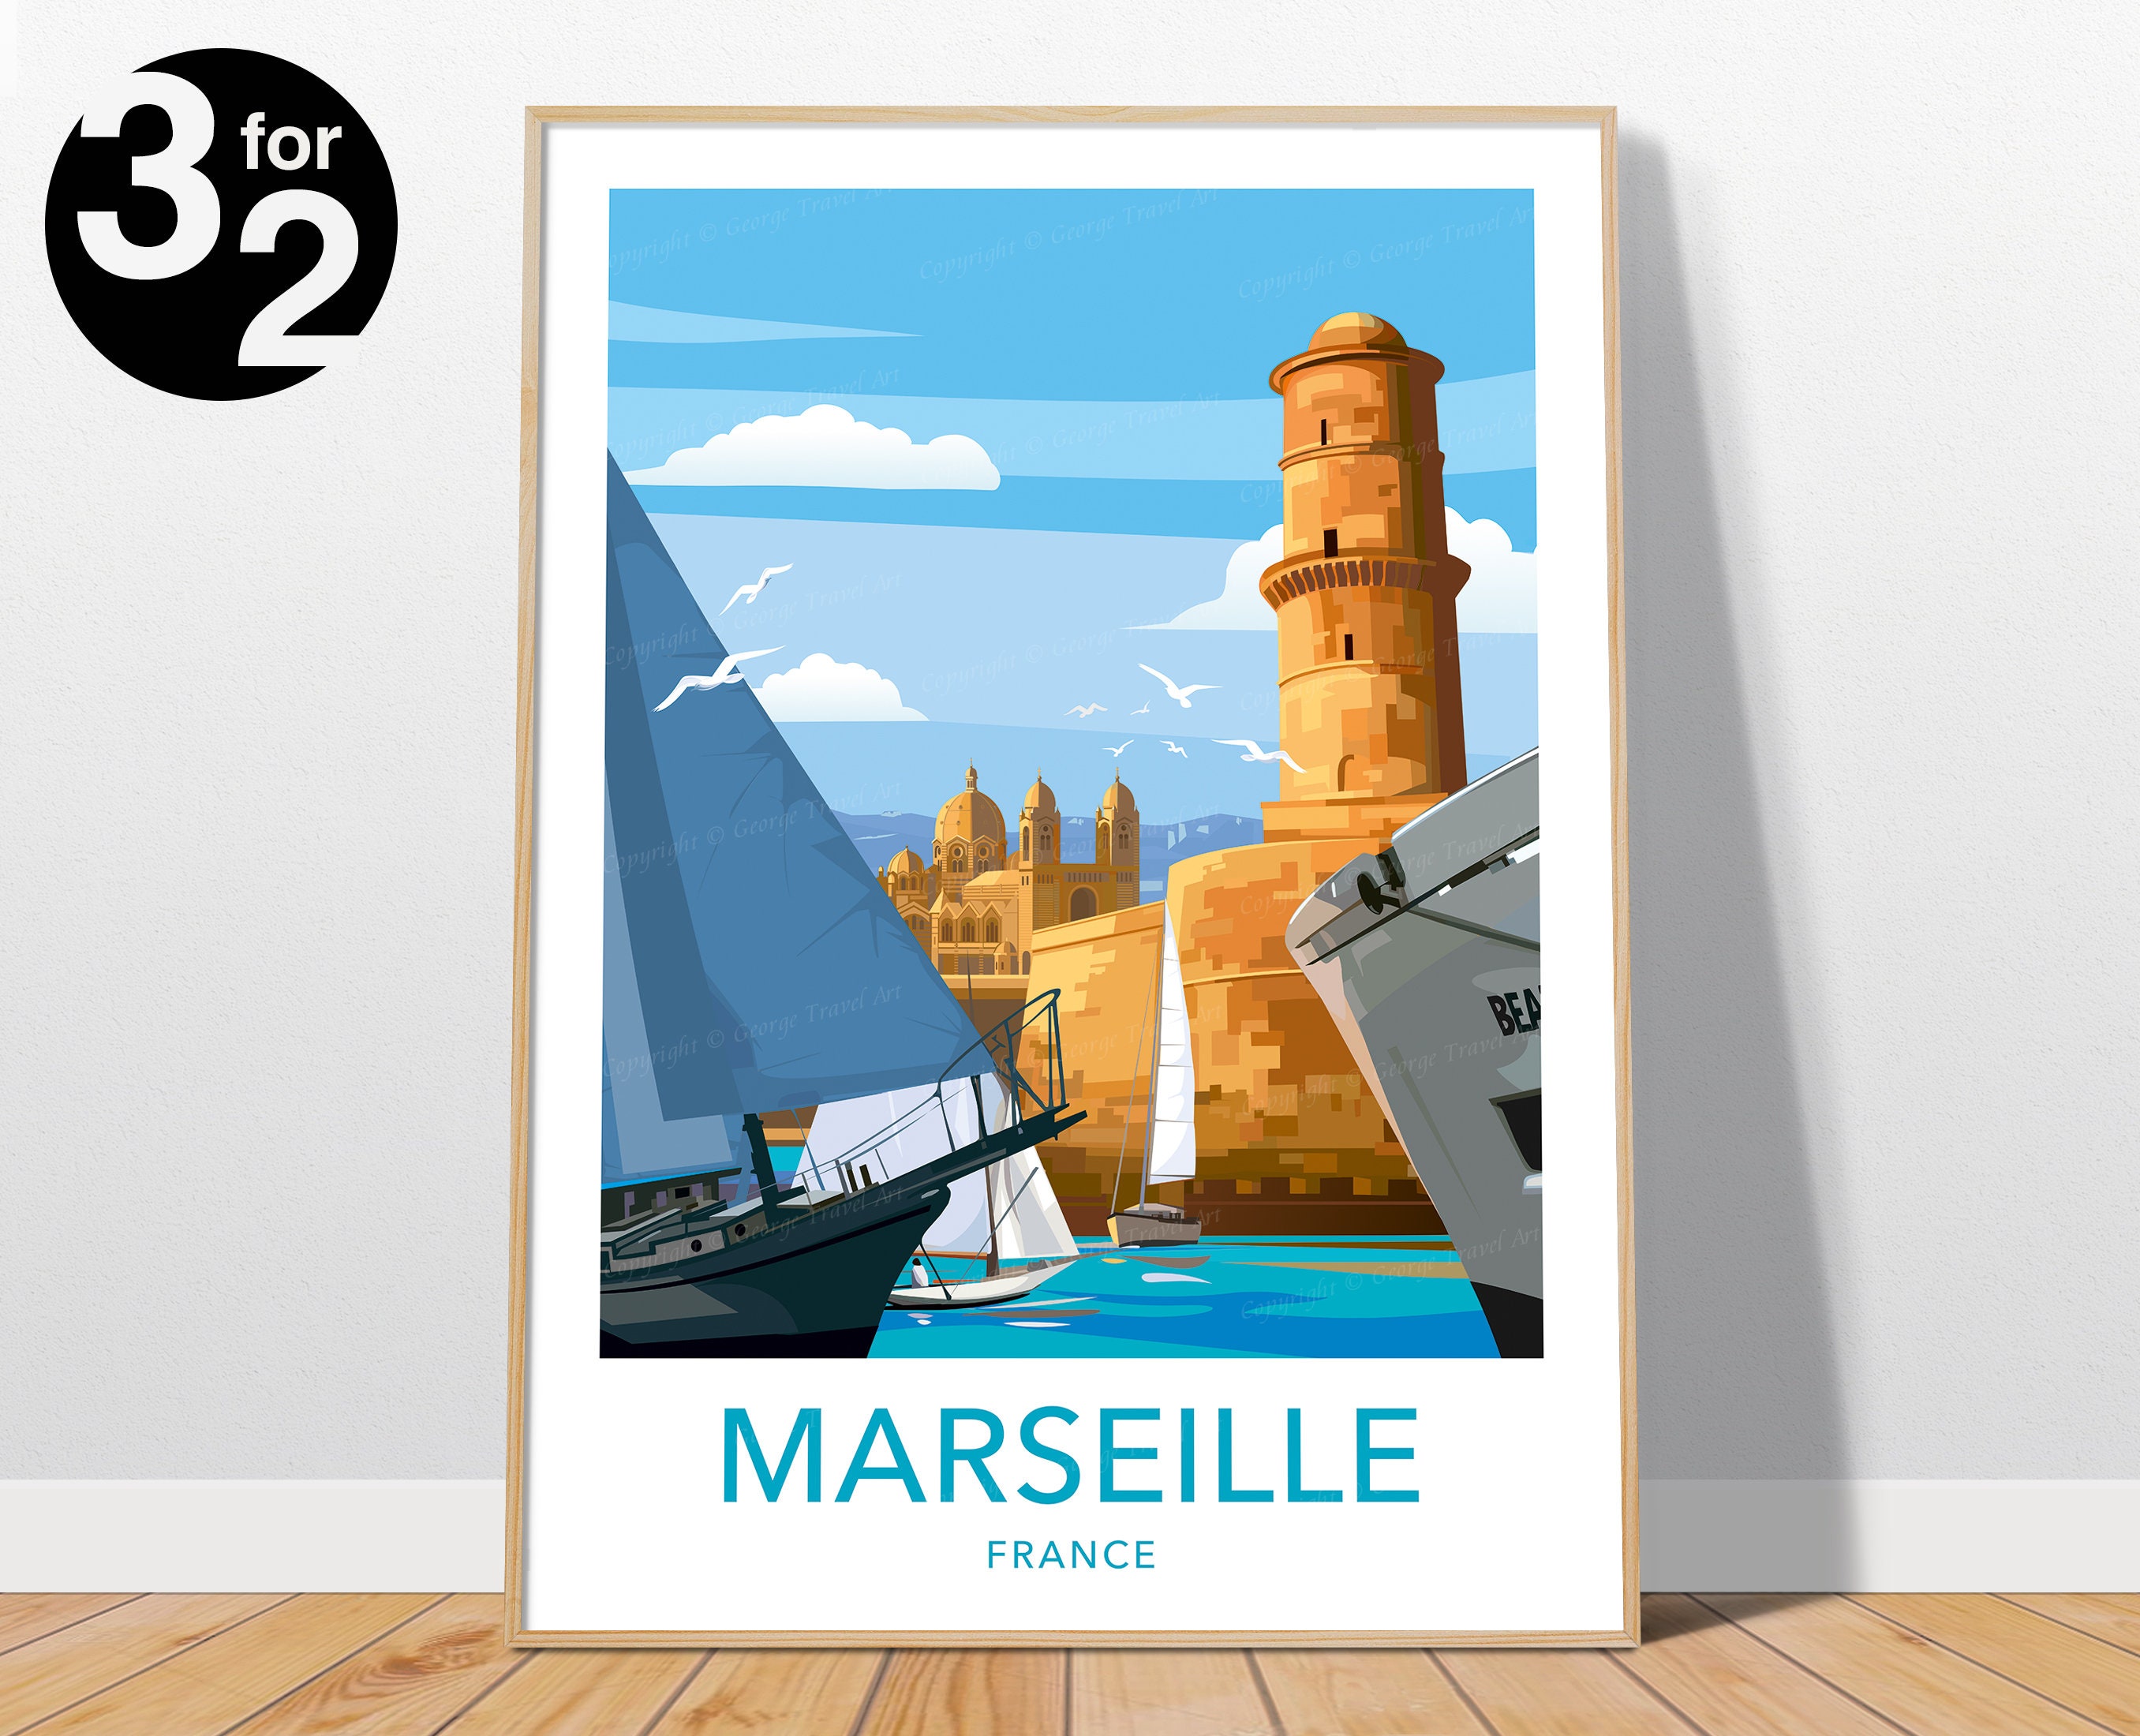 Marseille - glaces polos│Affiches noir & blanc│